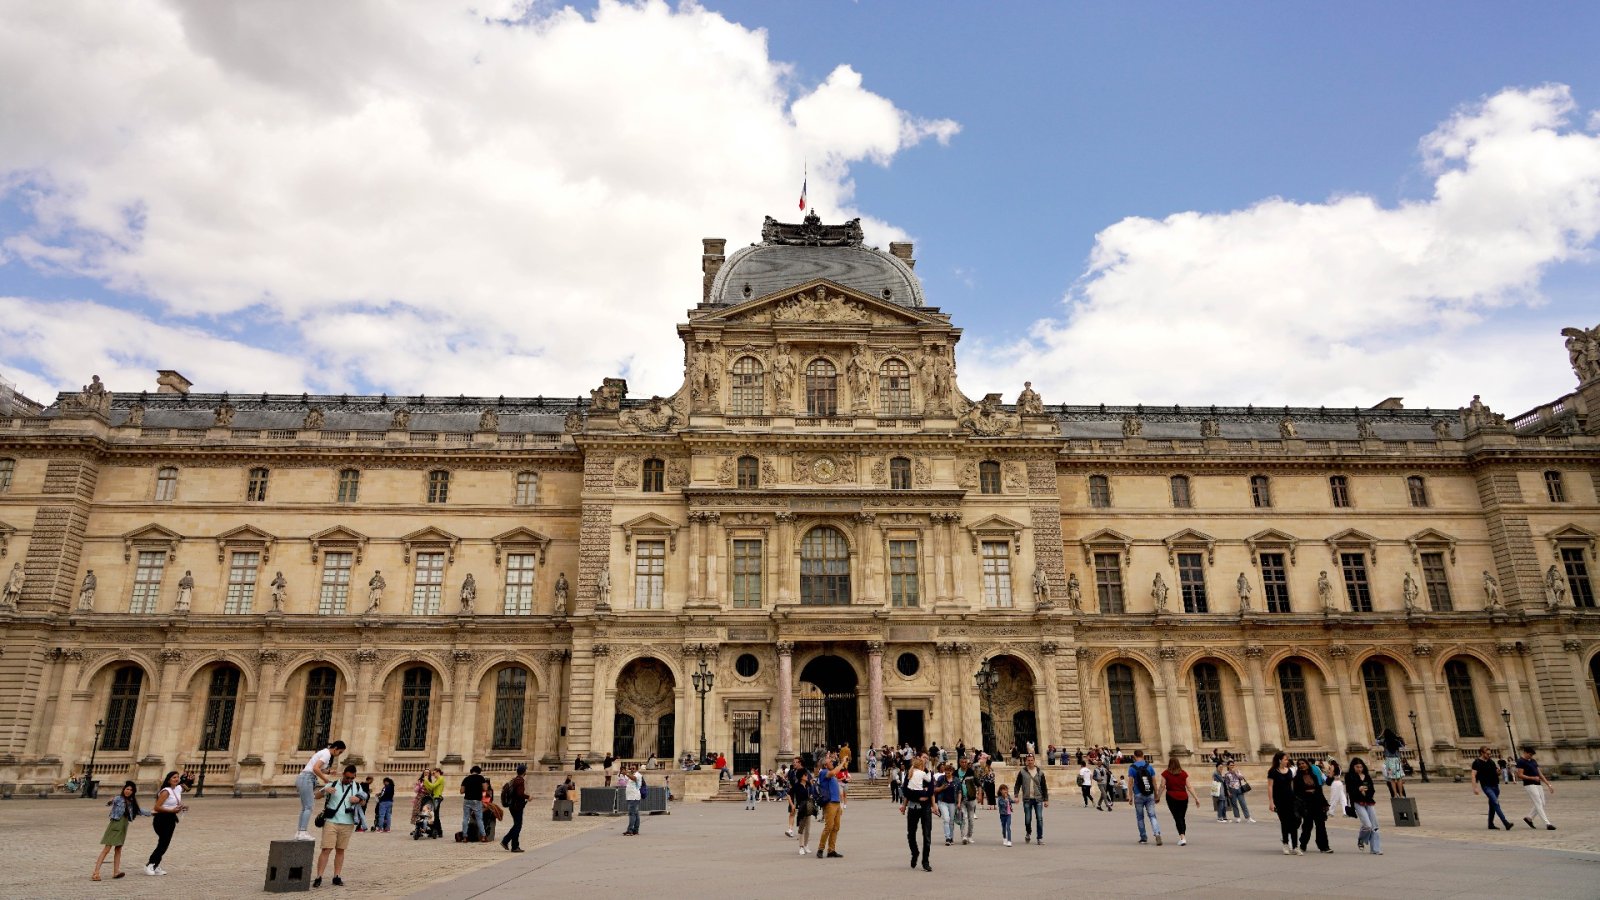 올 봄 파리를 방문한다면 루브르 박물관에서 볼 것: 걸작 5선